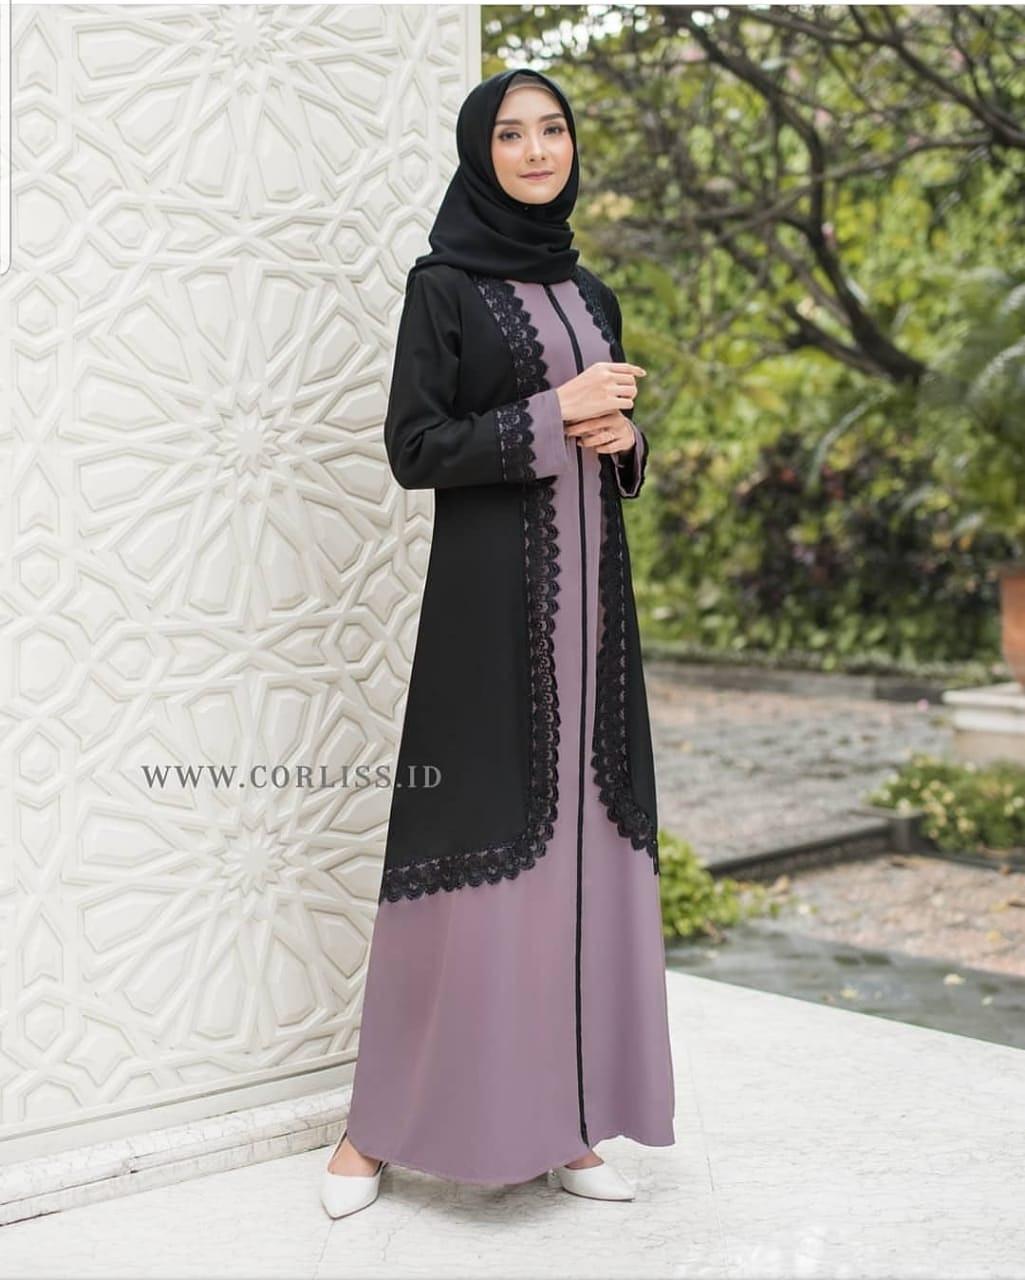 Baju Muslim Modern AURELIA MAXY Bahan WOLLYCRAPE APK RENDA Gamis Wanita Murah Gamis Wanita Remaja Gamis Wanita Modern 2020 Kekinian